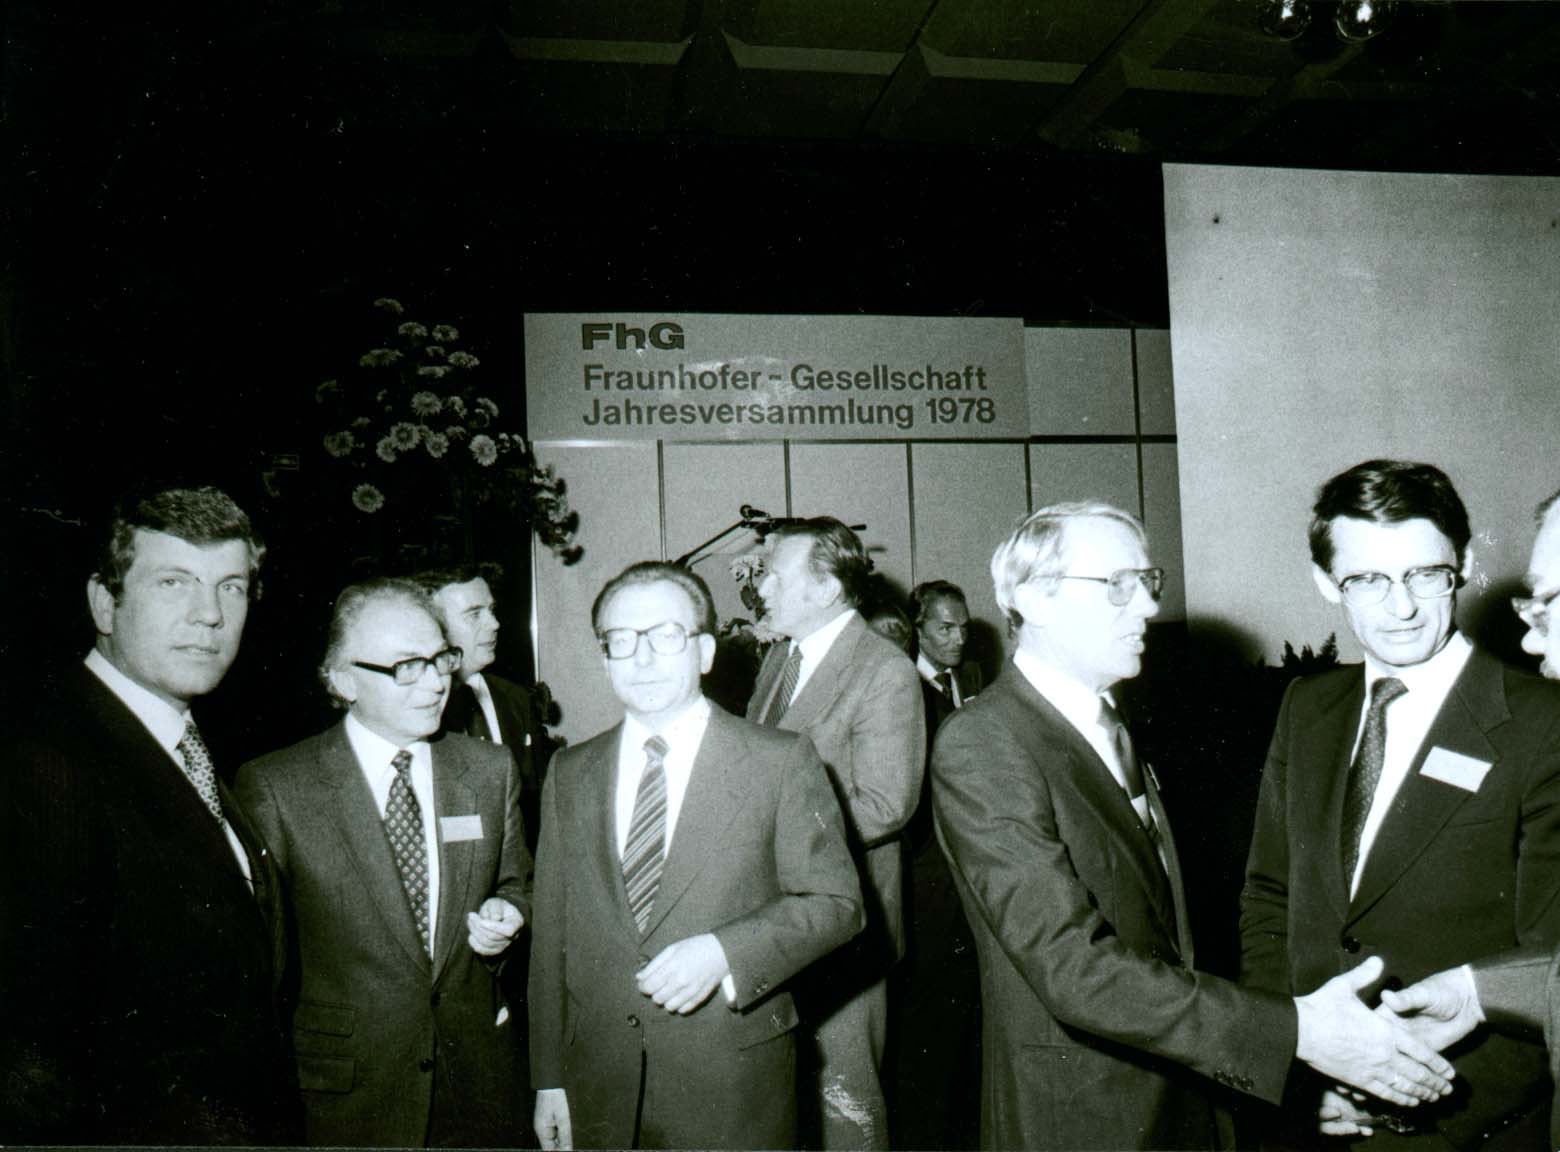 Jahrestagung 1978 - Bundesminister für Forschung und Technologie Volker Hauff, Fraunhofer-Präsident Heinz Keller, Ministerpräsident von Baden-Württemberg Lothar Späth, Fraunhofer-Vorstandsmitglieder Eberhard Schlephorst und Hans-Ulrich Wiese (v.l.n.r. )